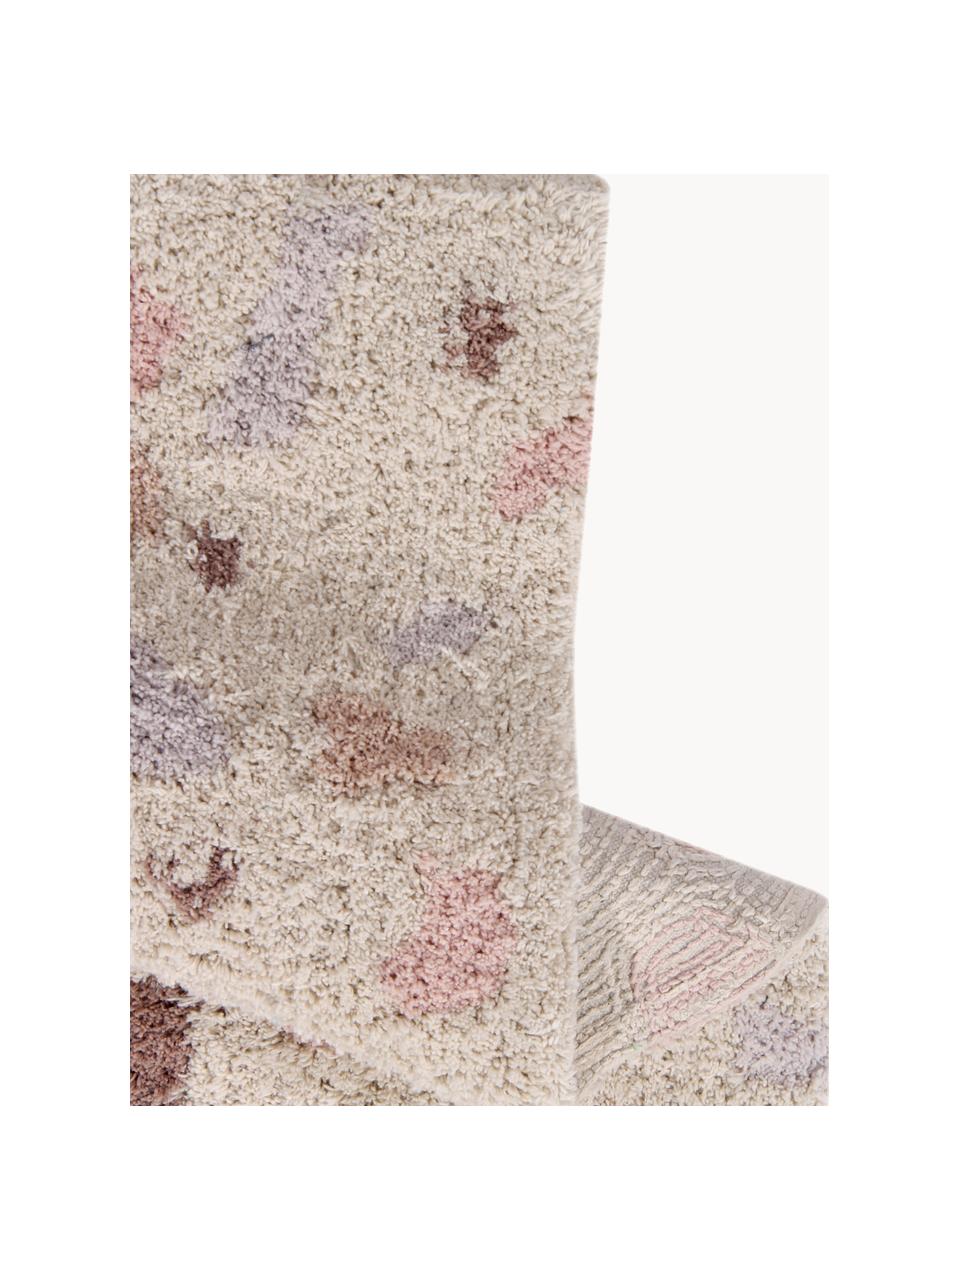 Tappeto per bambini fatto a mano Terrazzo, lavabile, Retro: 100% cotone, Pesca, tonalità rosa, Larg. 140 x Lung. 200 cm (taglia M)